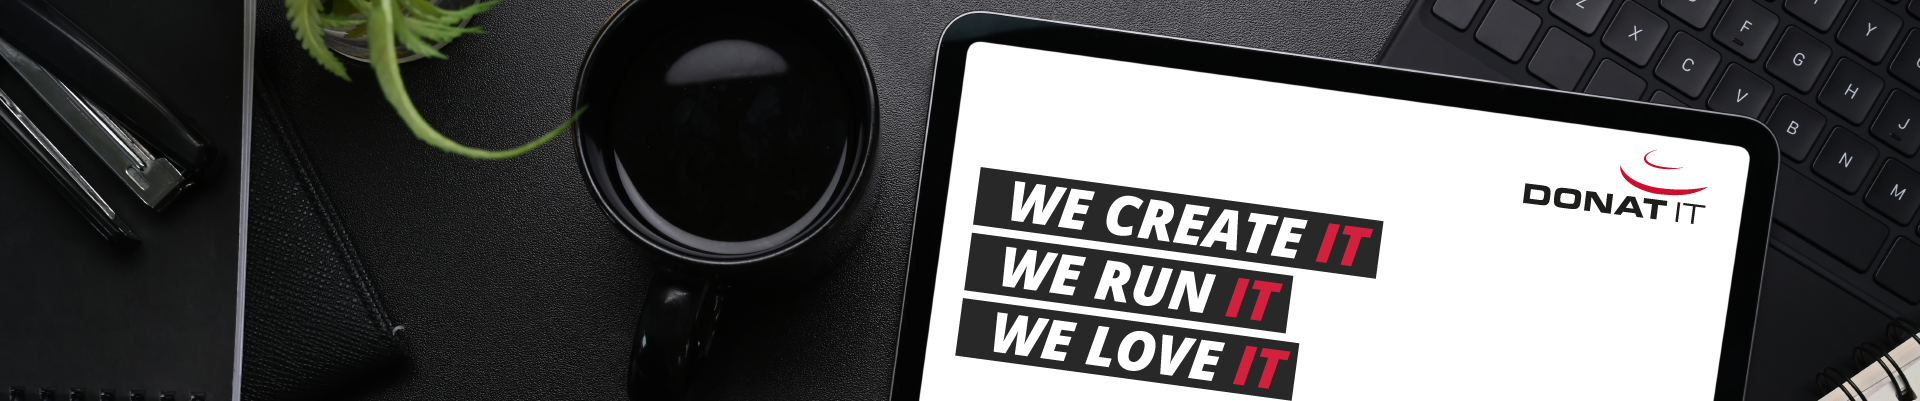 Schreibtisch mit Tablet, das DONAT IT Slogan "We create IT, we run IT, we love IT" anzeigt. 